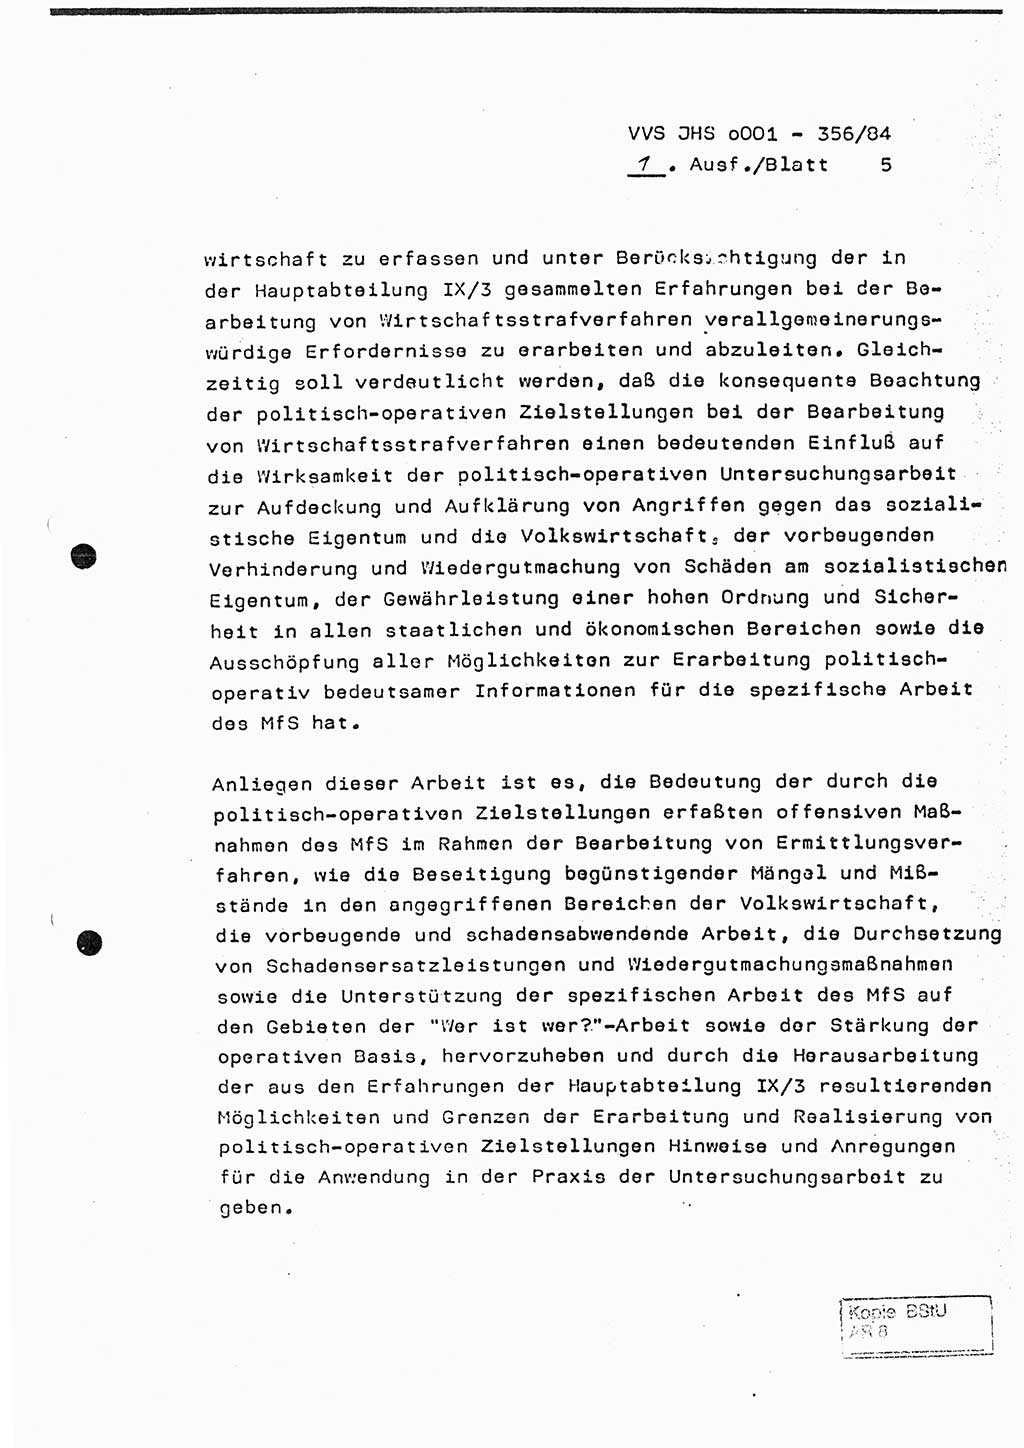 Diplomarbeit, Major Lutz Rahaus (HA Ⅸ/3), Ministerium für Staatssicherheit (MfS) [Deutsche Demokratische Republik (DDR)], Juristische Hochschule (JHS), Vertrauliche Verschlußsache (VVS) o001-356/84, Potsdam 1984, Seite 5 (Dipl.-Arb. MfS DDR JHS VVS o001-356/84 1984, S. 5)